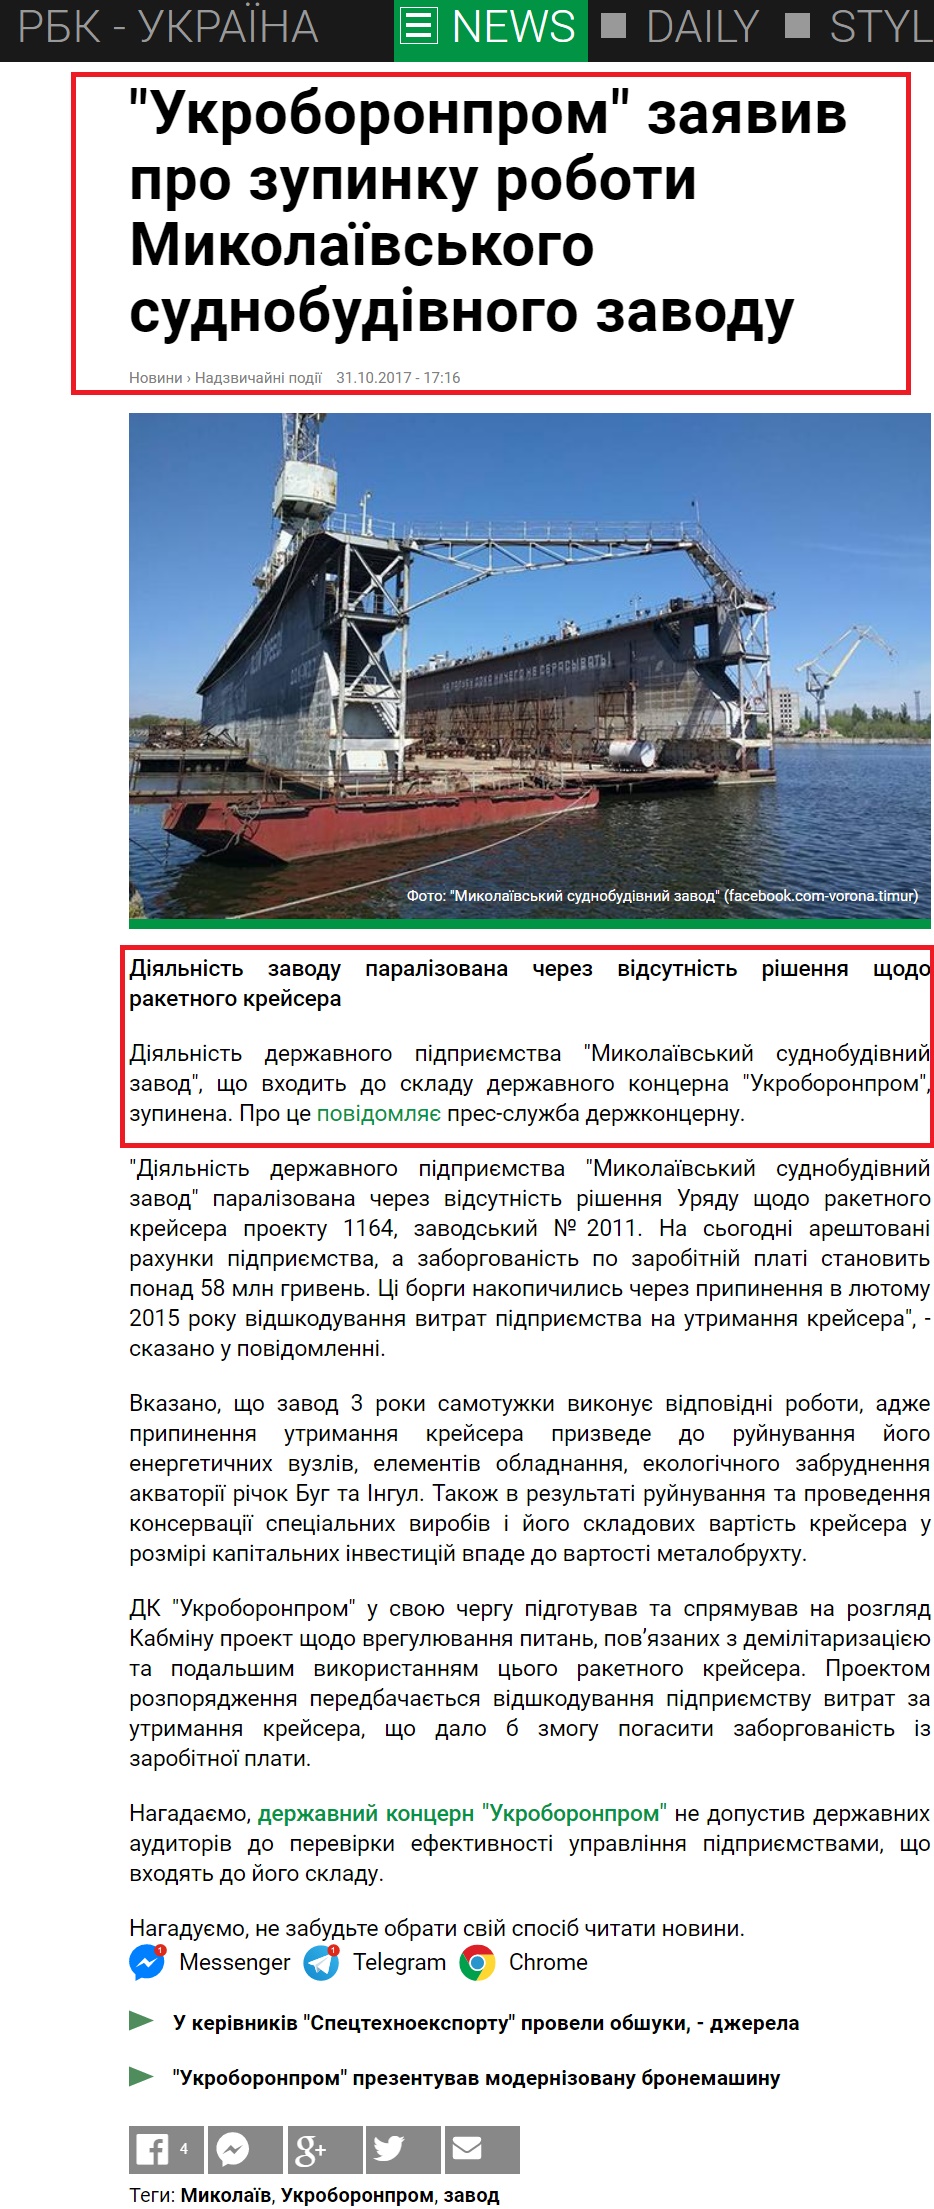 https://www.rbc.ua/ukr/news/ukroboronprom-zayavil-ostanovke-raboty-nikolaevskogo-1509462976.html